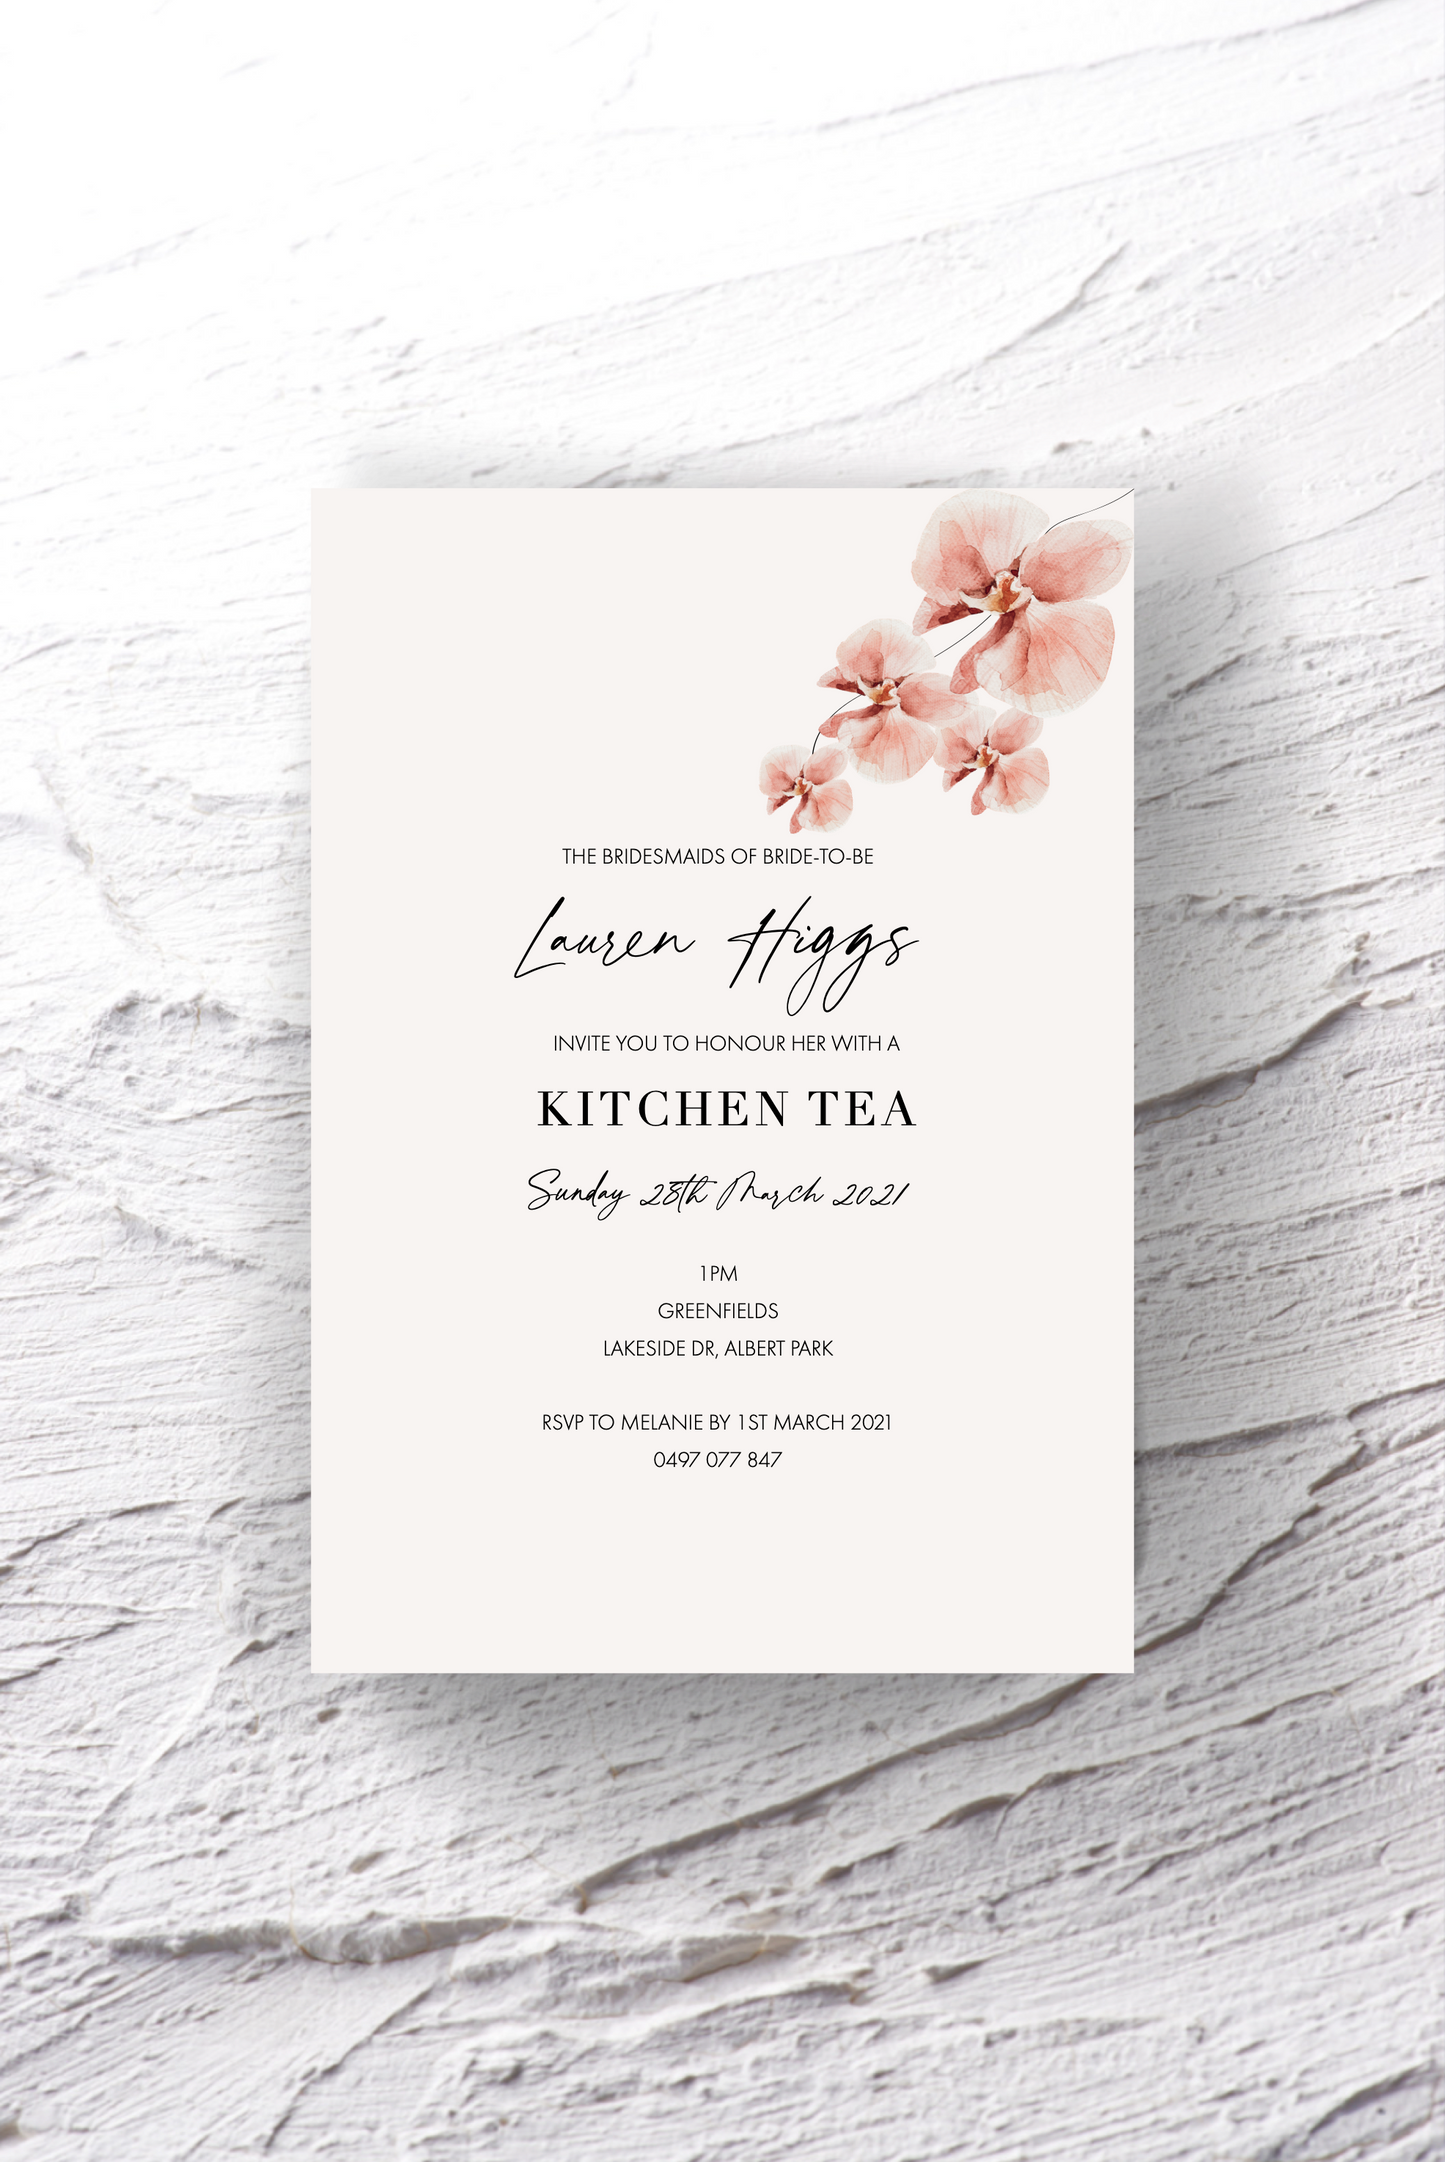 Lauren Kitchen Tea Invitation